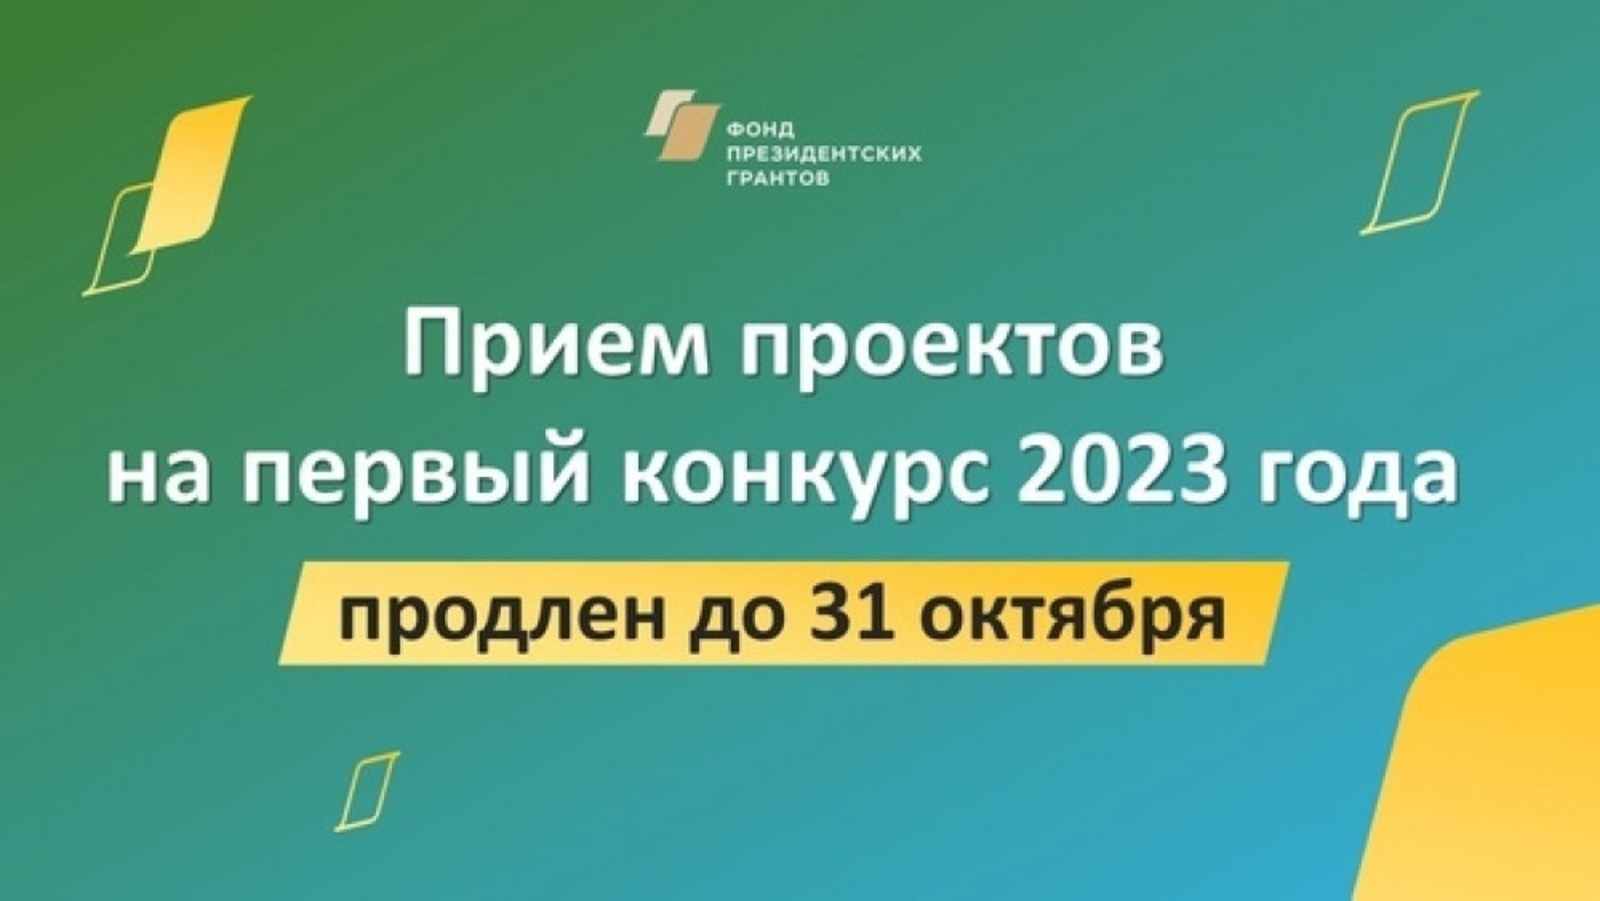 Прием заявок на конкурс президентских грантов продлен до 31 октября 2022 года